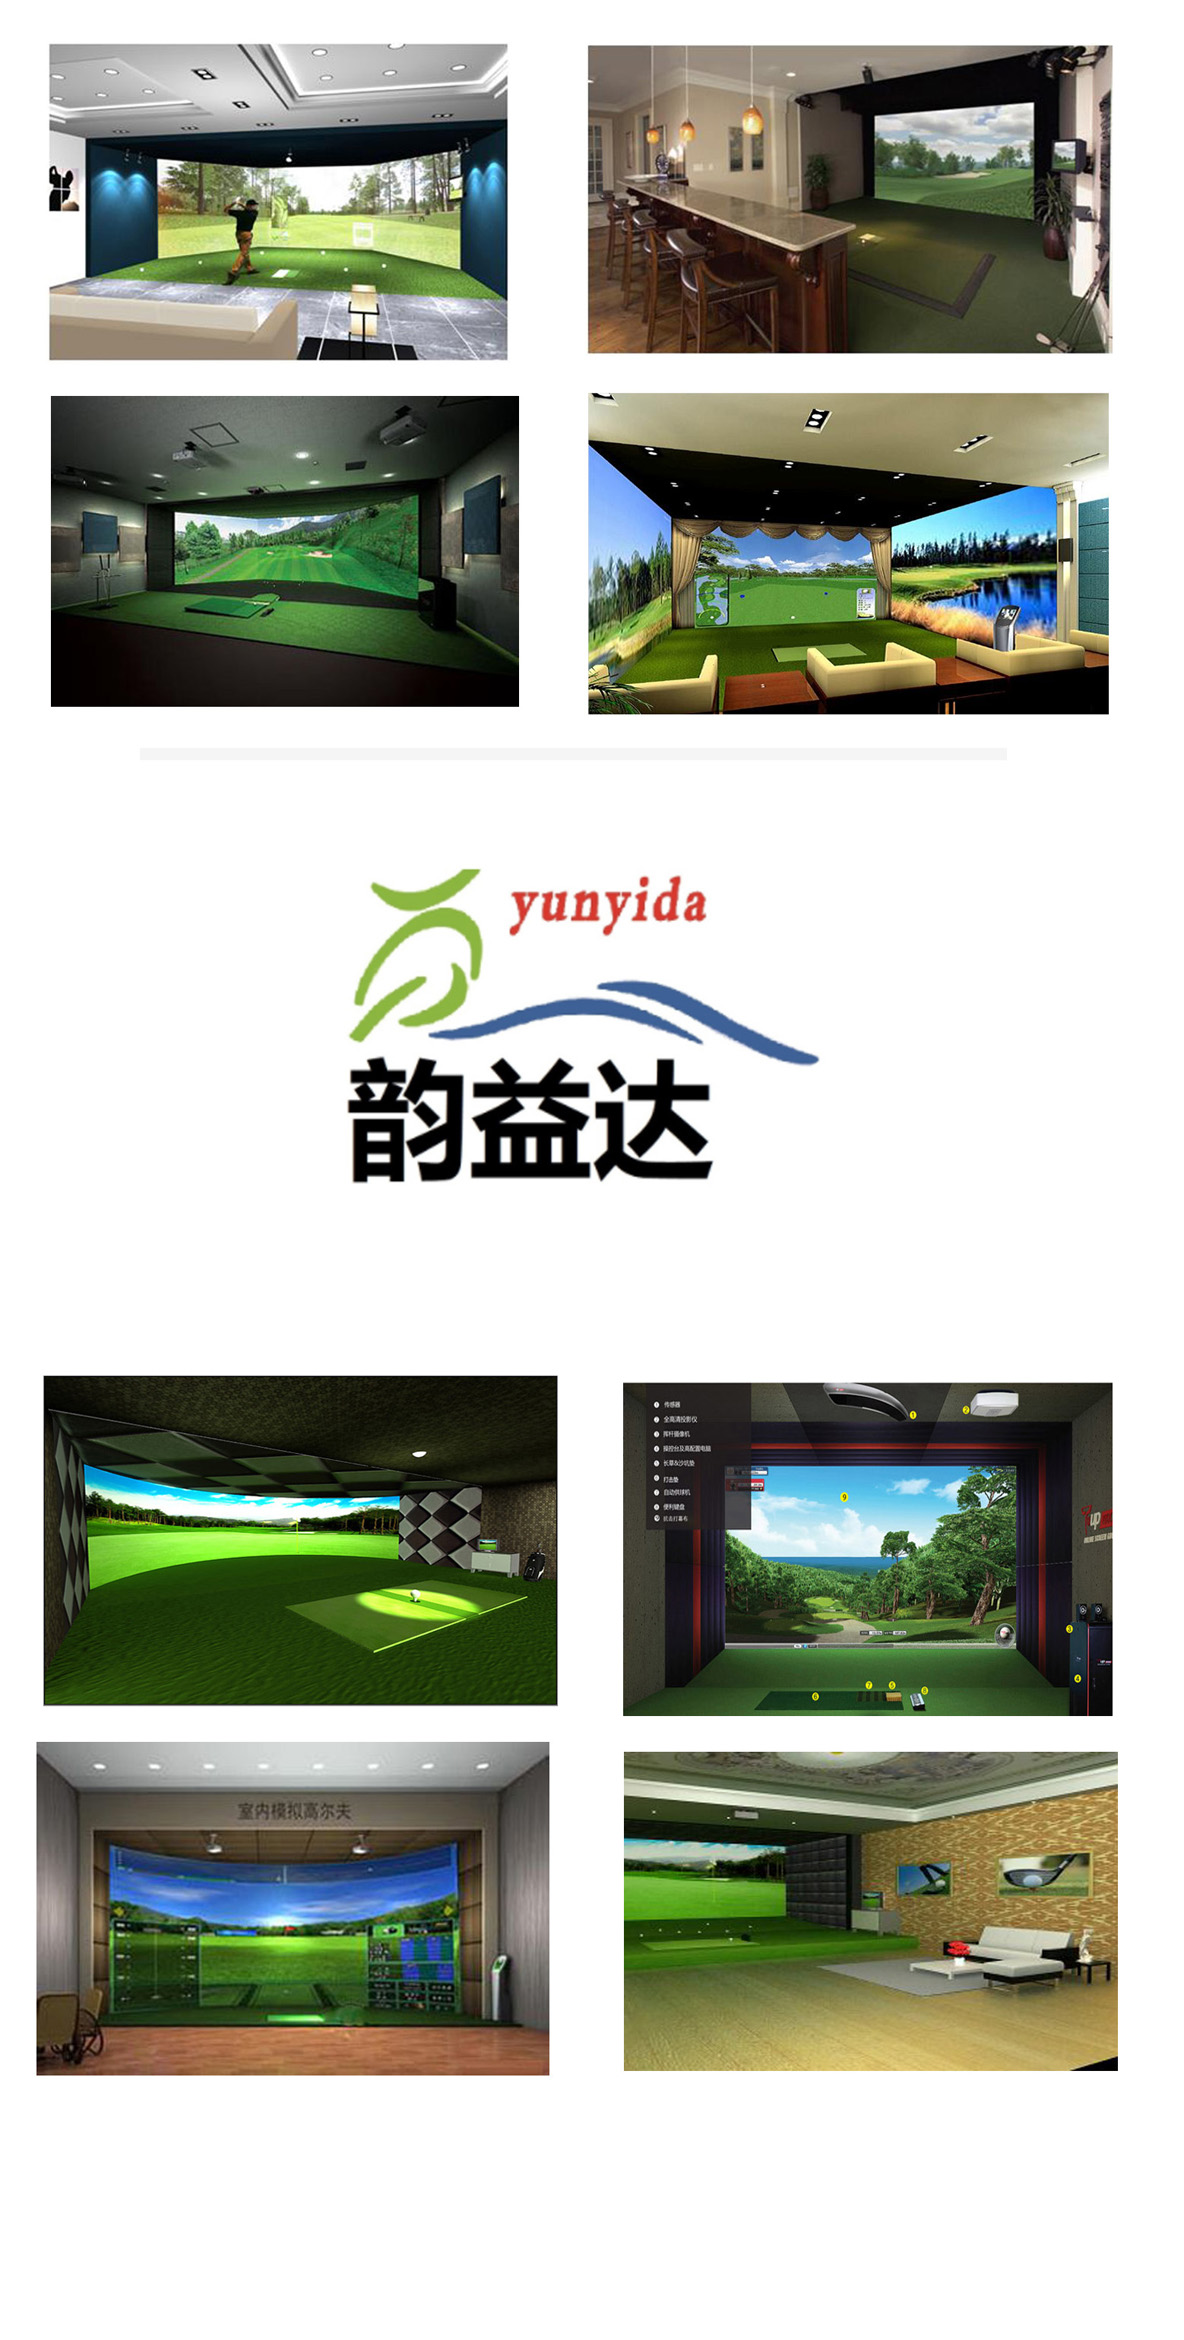 高尔夫模拟器设备 217.jpg